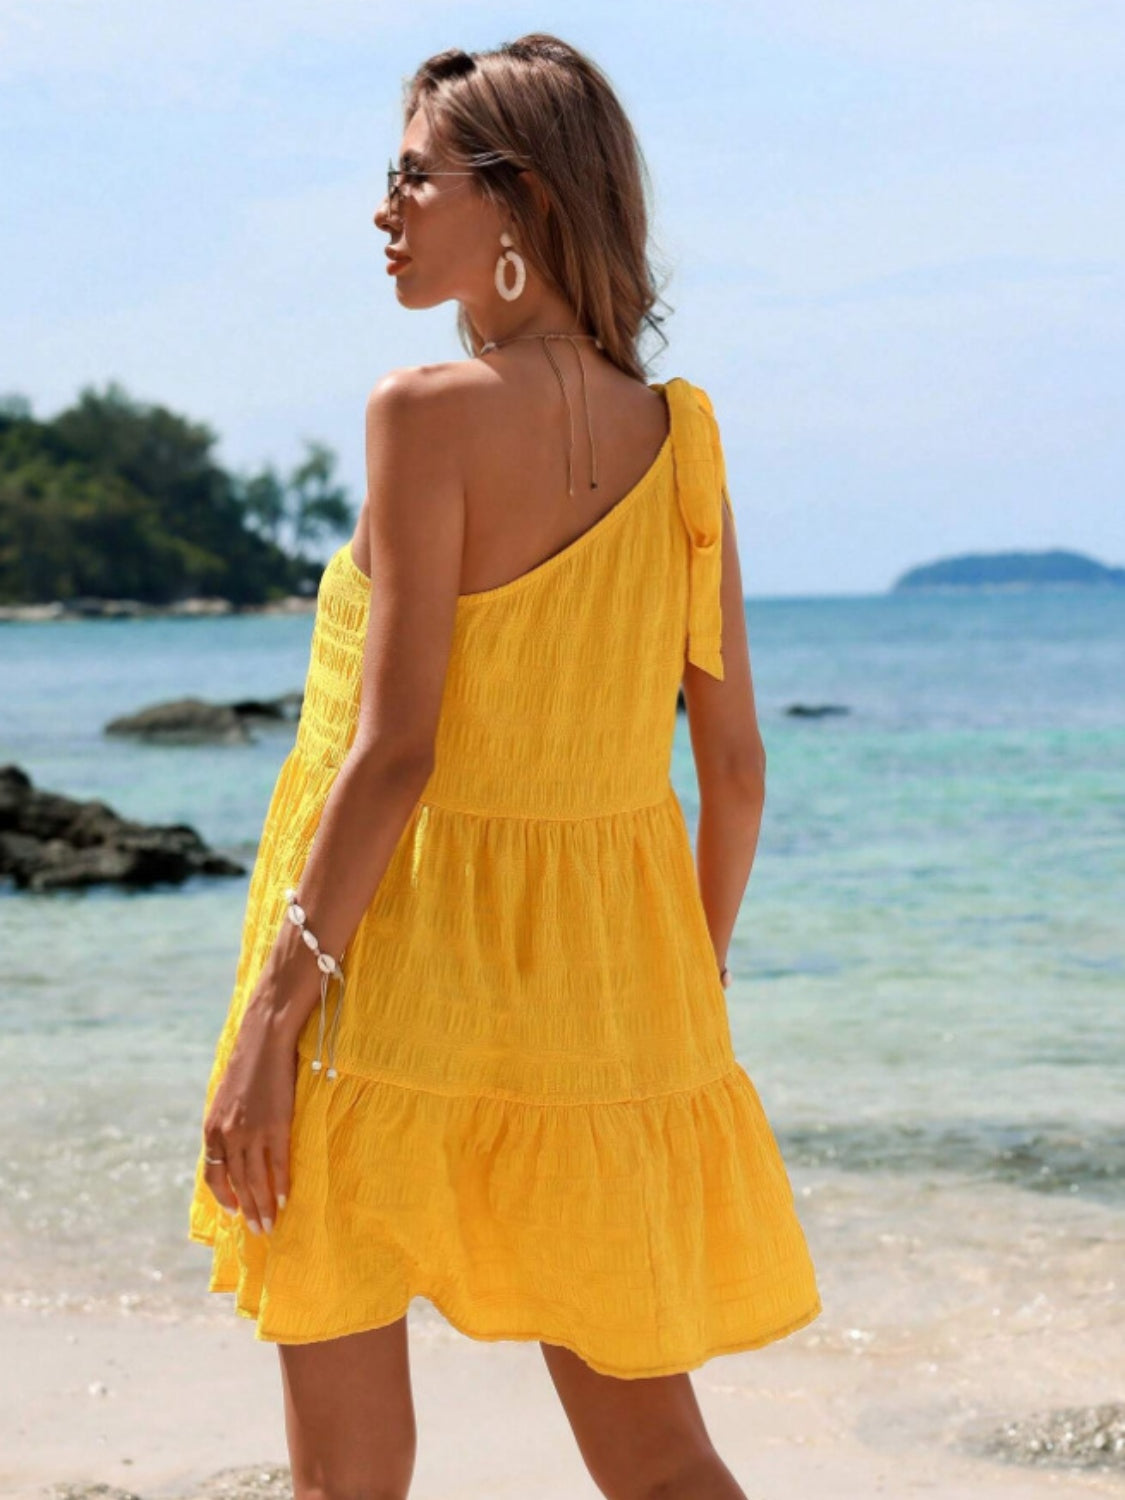 TEEK - Yellow Tied Single Shoulder Dress DRESS TEEK Trend   